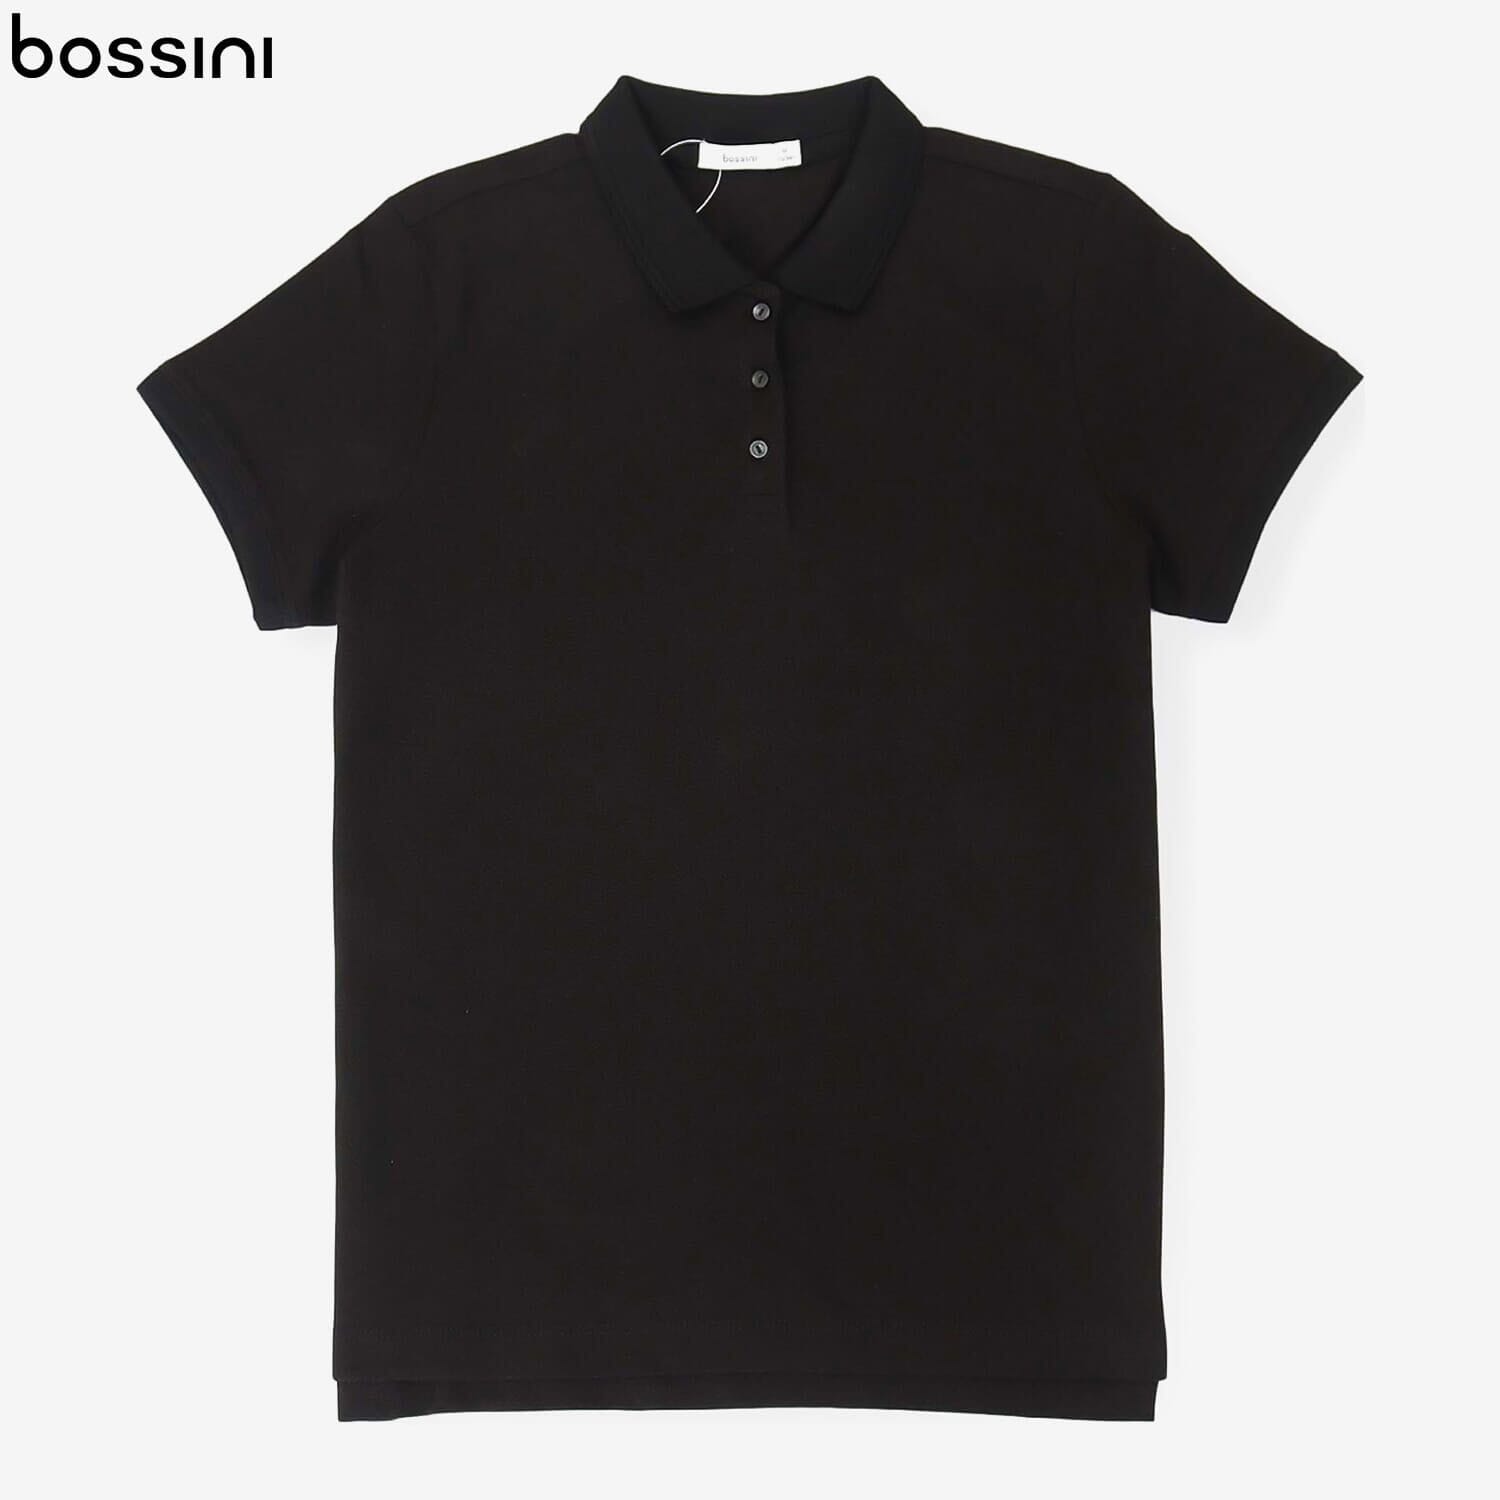 Bossini Nepal: Bossini Official Store at Daraz.com.np